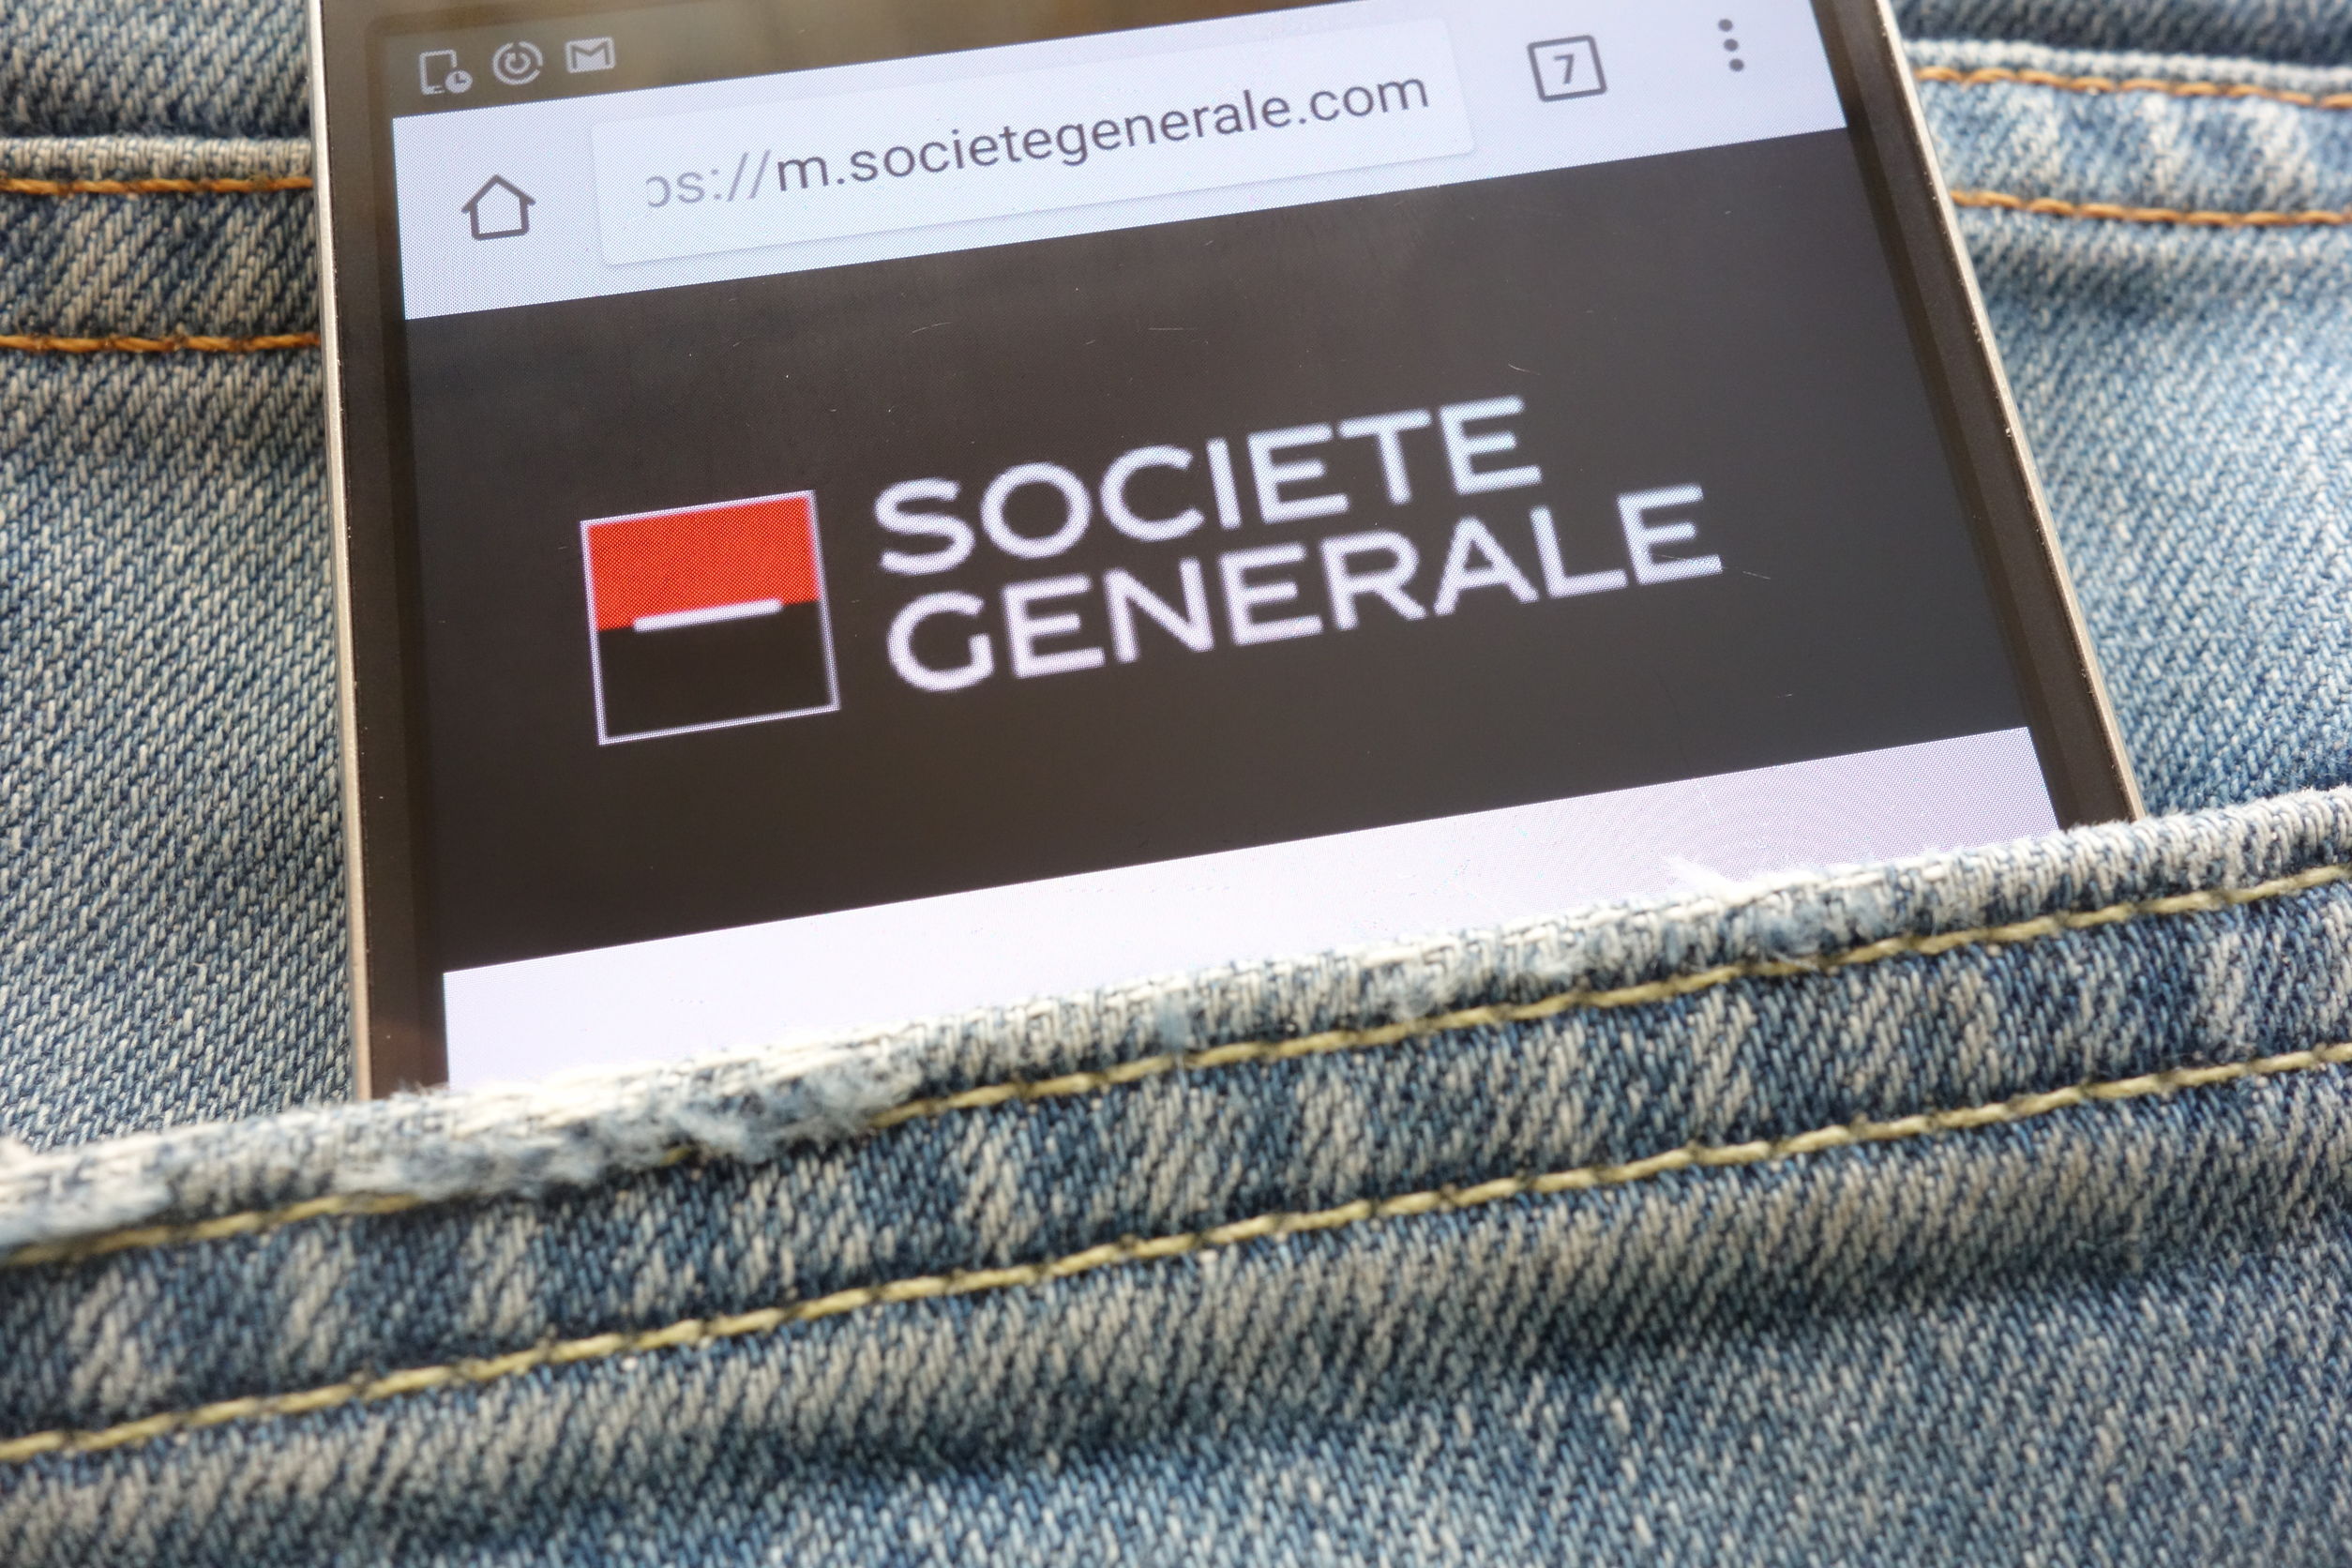 tela de celular exibindo a logo do Societé Generale